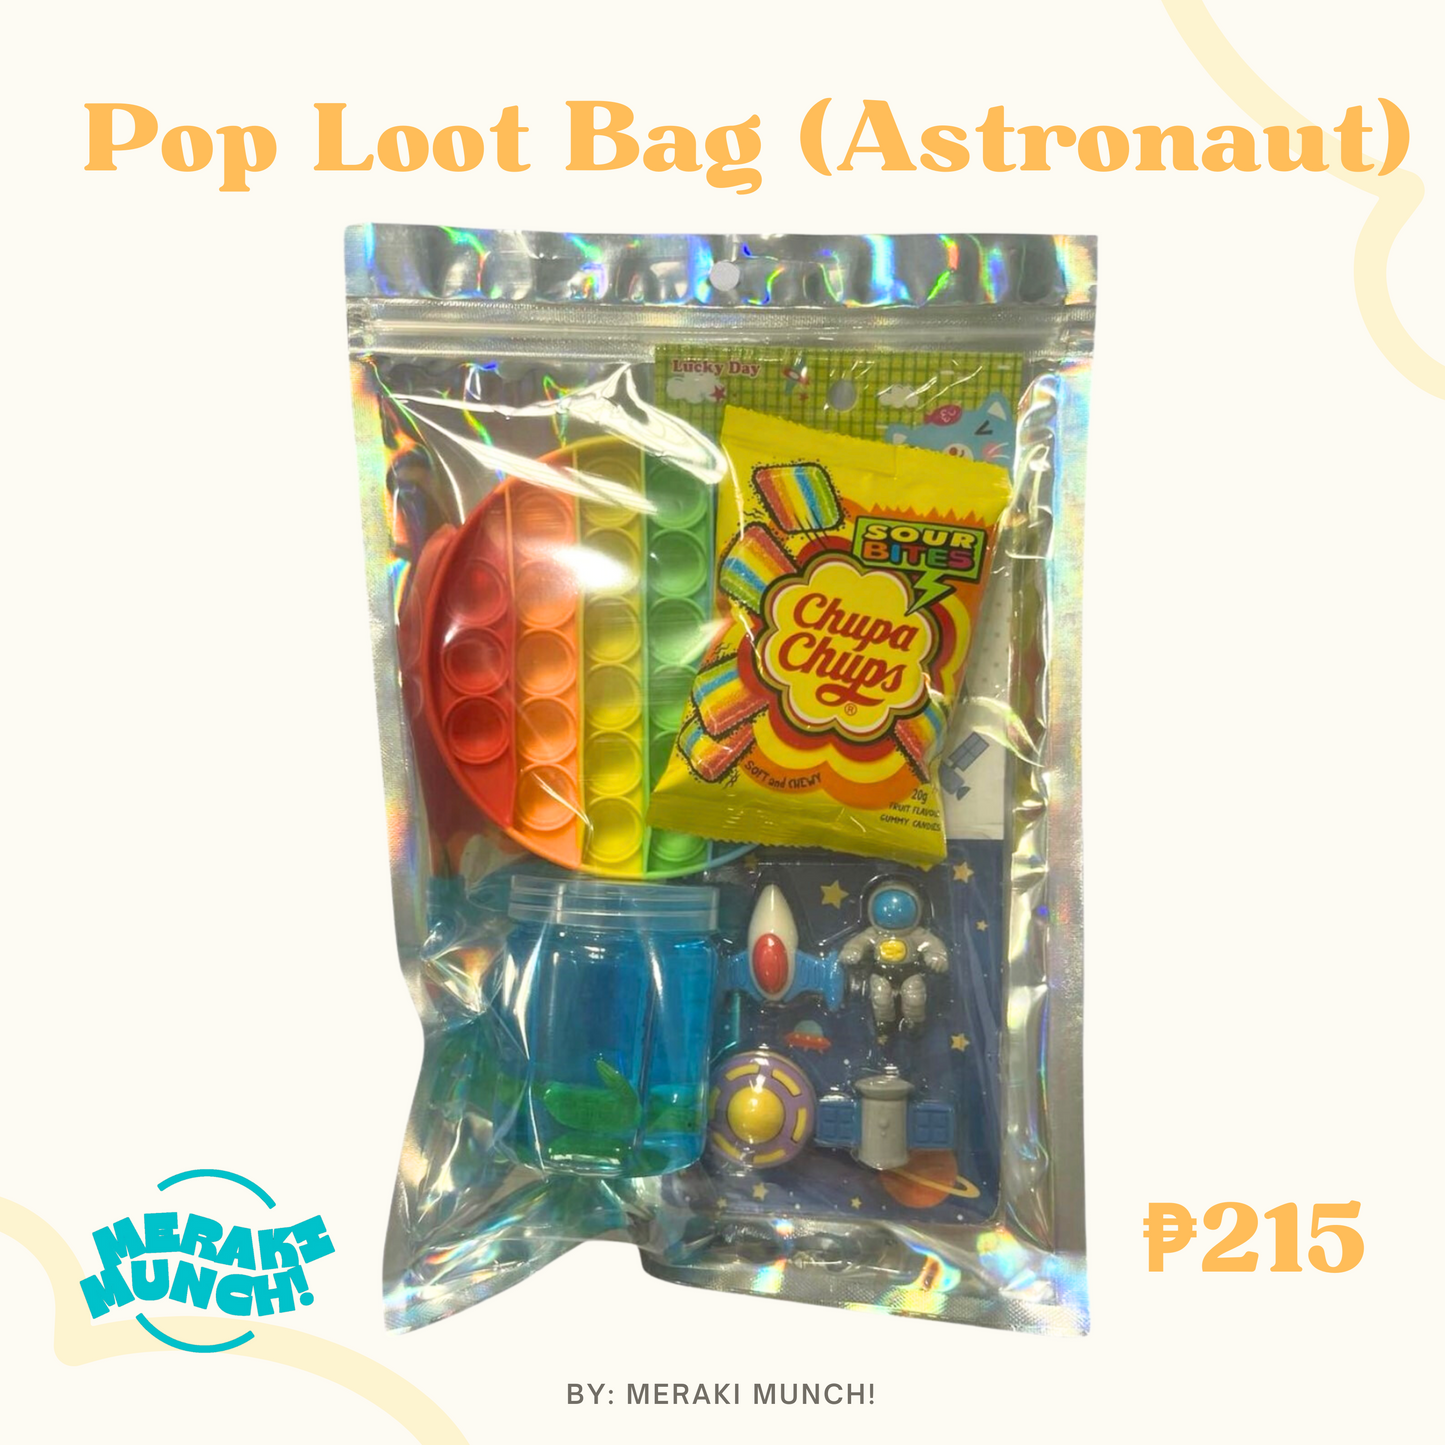 Pop Loot Bag